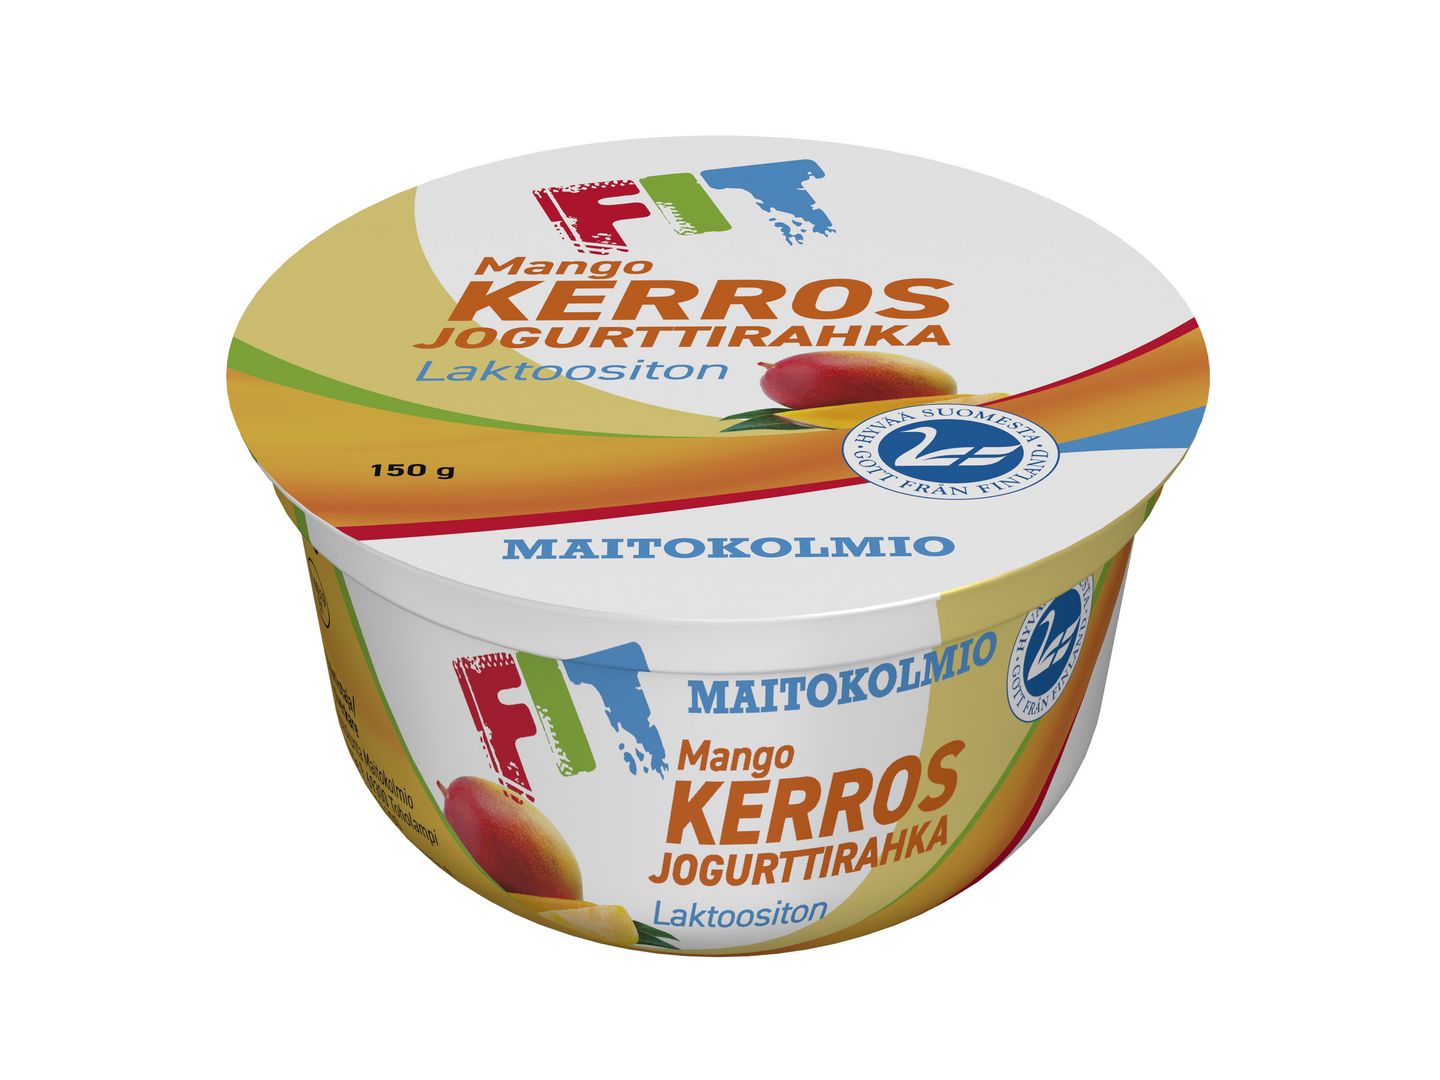 Maitokolmio FIT kerrosjogurttirahka 150g mango laktoositon